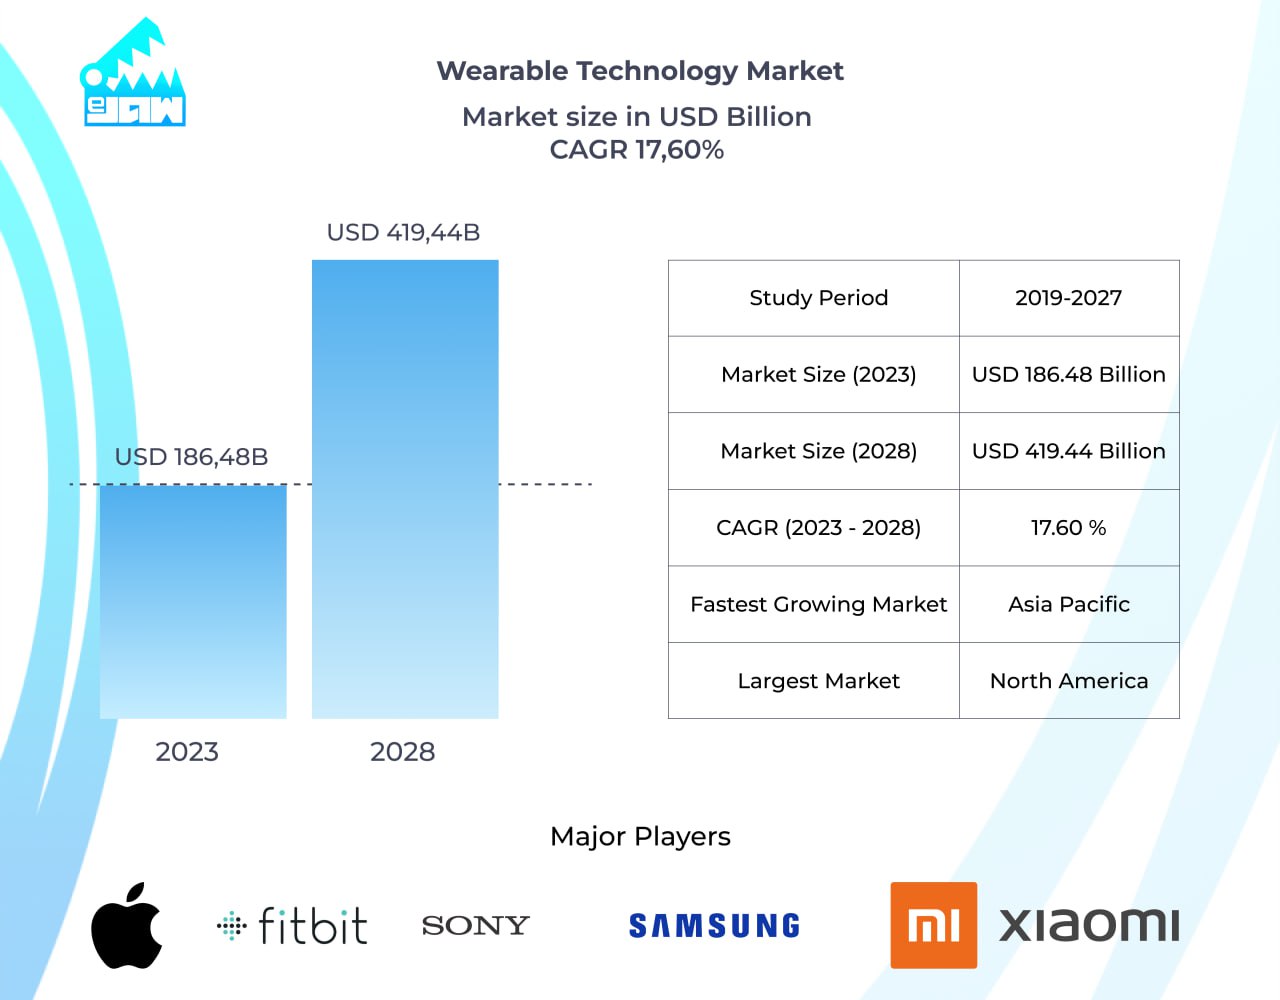 Wearable Technology Market size in USD Billion